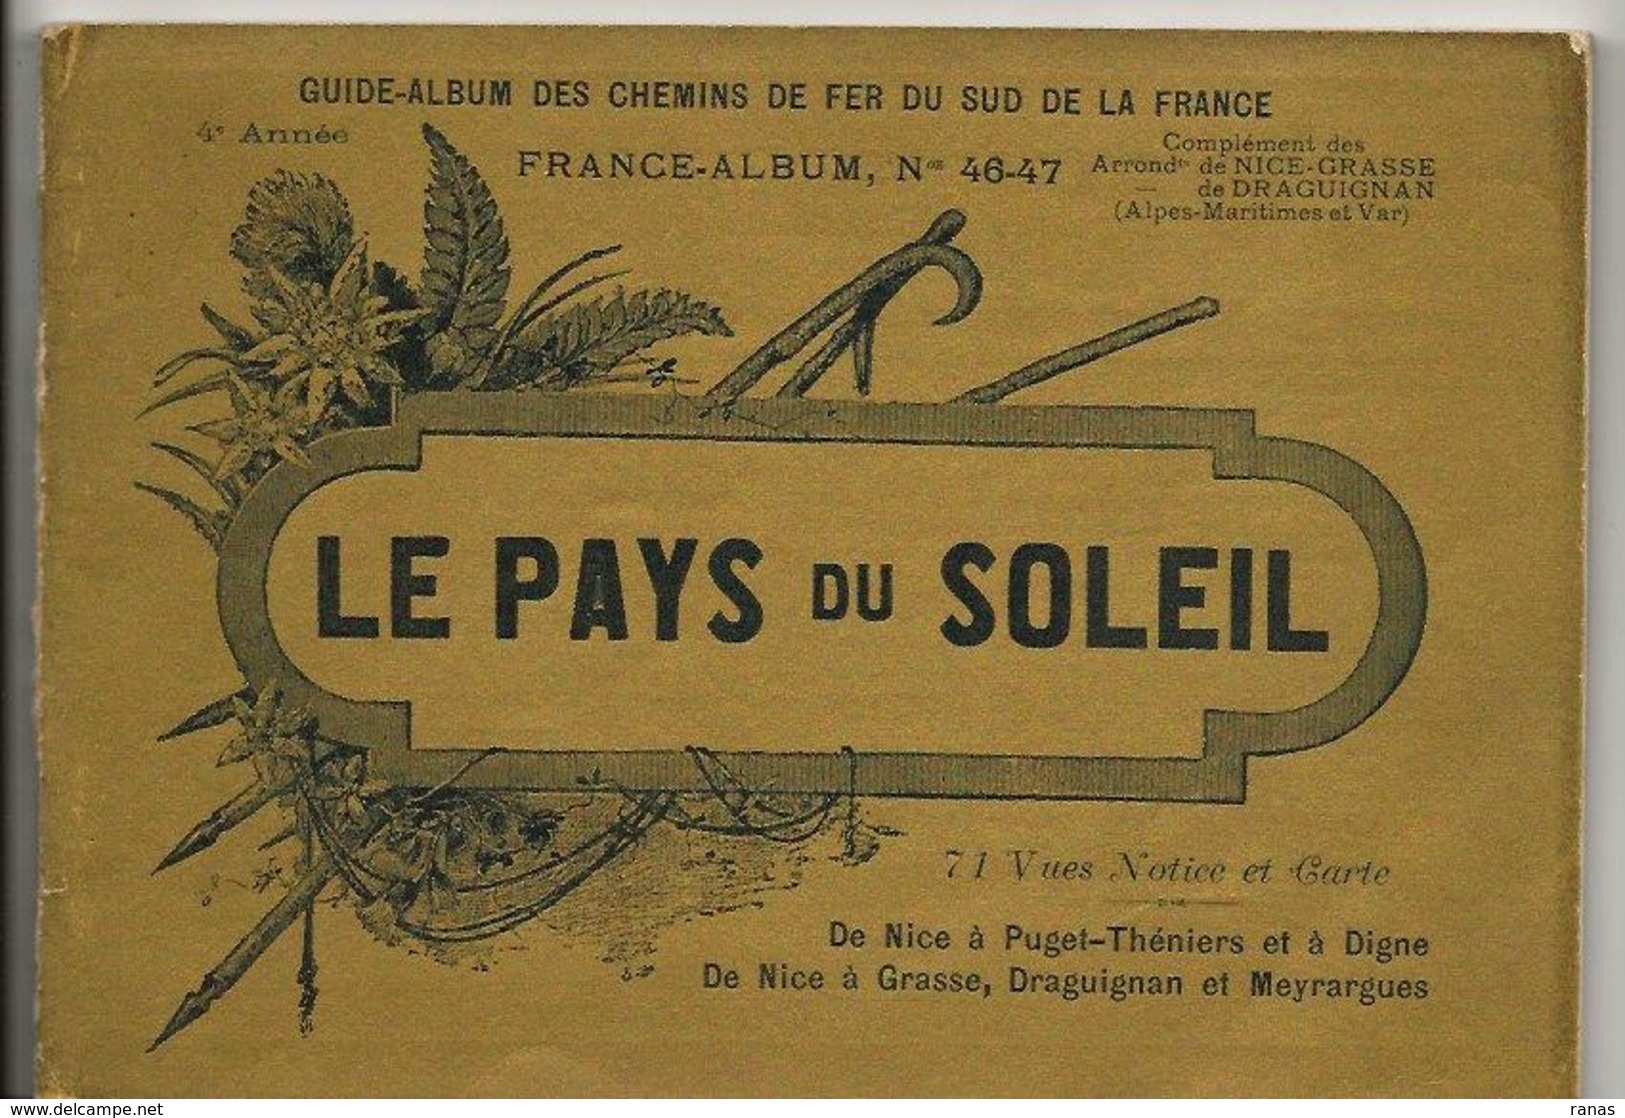 Alpes Maritimes 06 Et VAR France Album De A. KARL, Carte Gravures Texte Publicités 1896 Nice Draguignan - Dépliants Touristiques